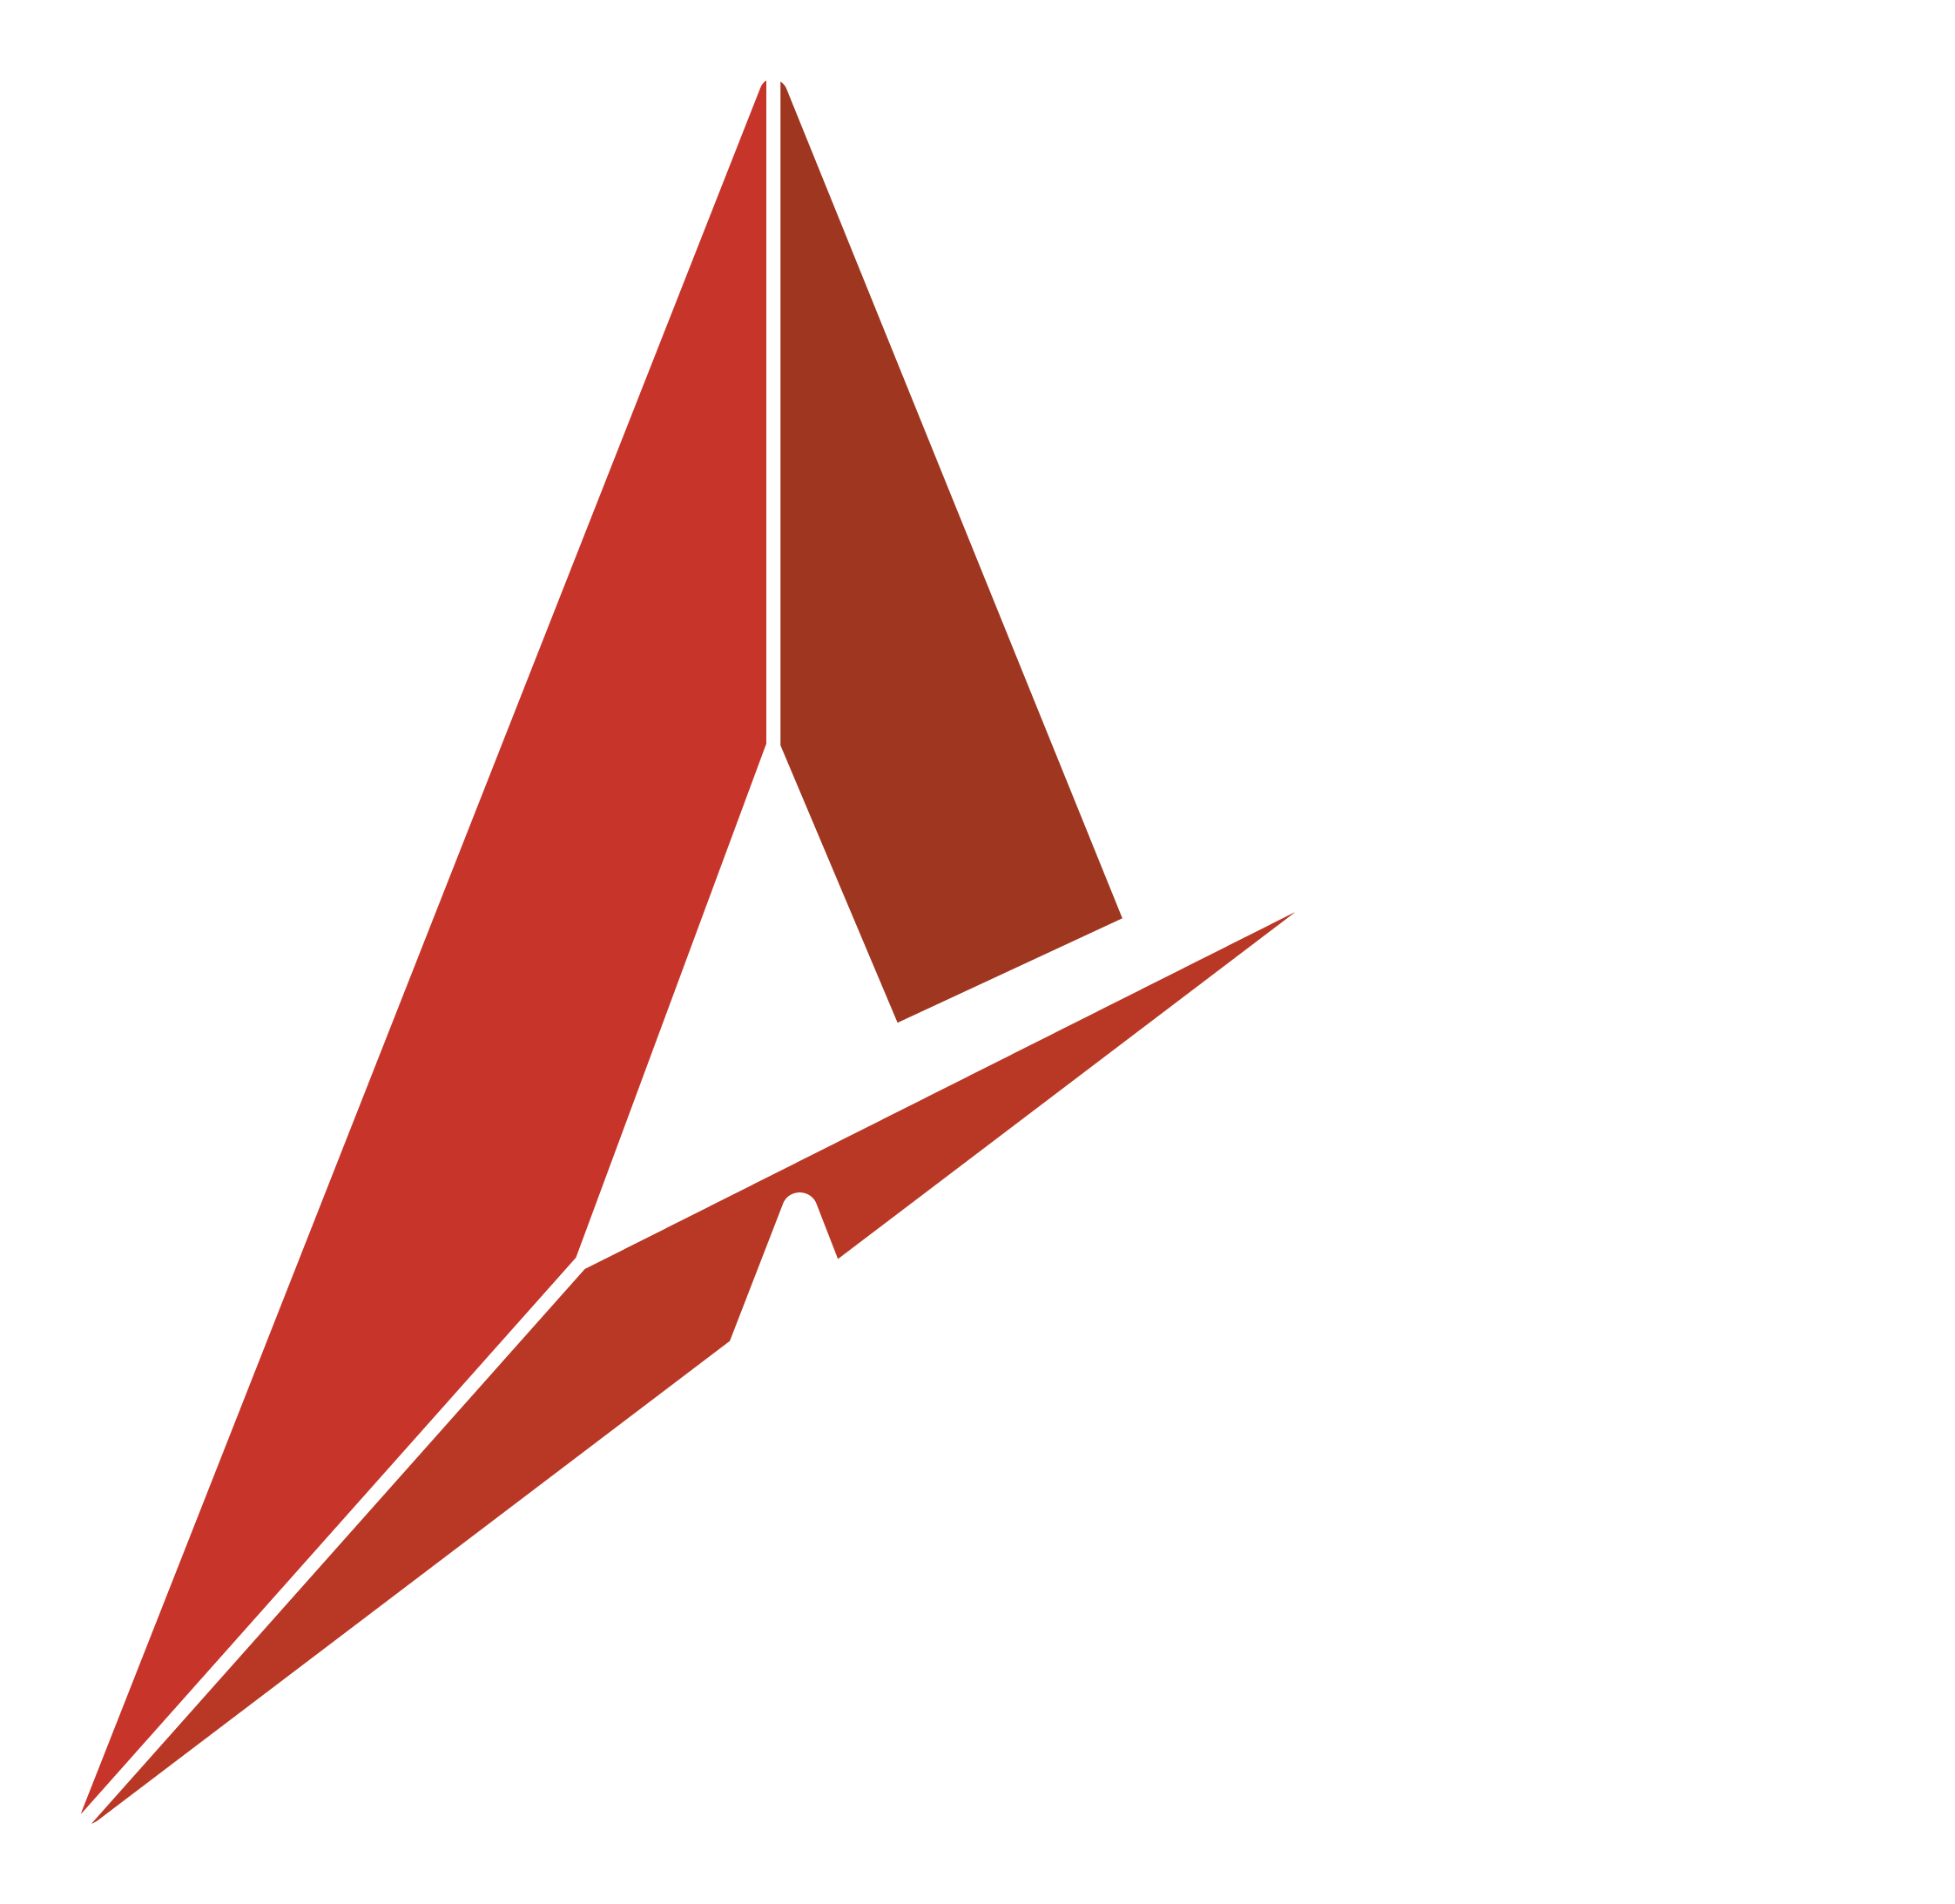 ad hoc gaming